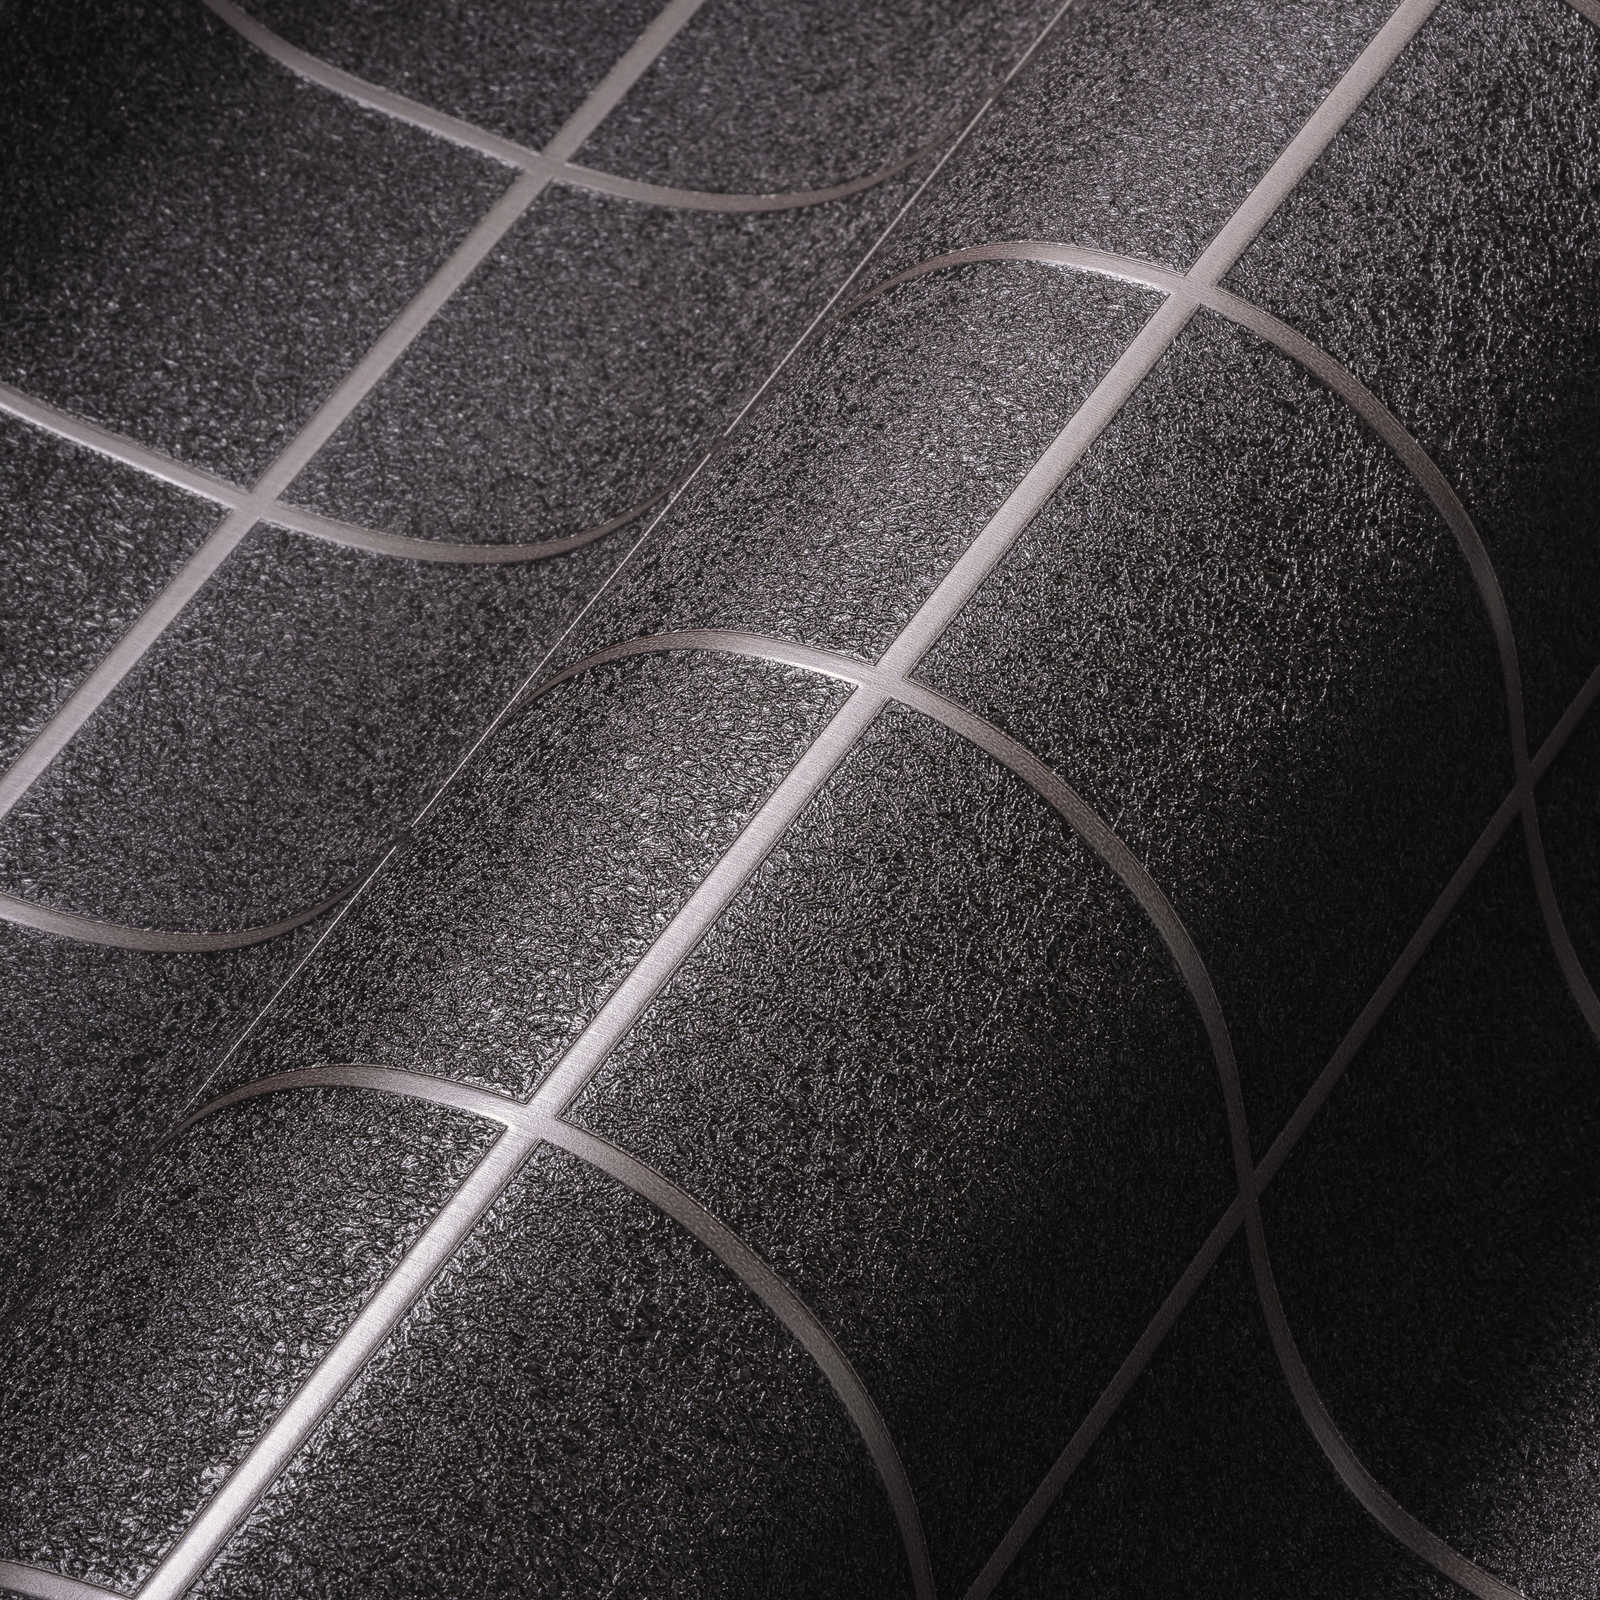             Wallpaper tile pattern with 3D effect, mottled - copper, grey, purple
        